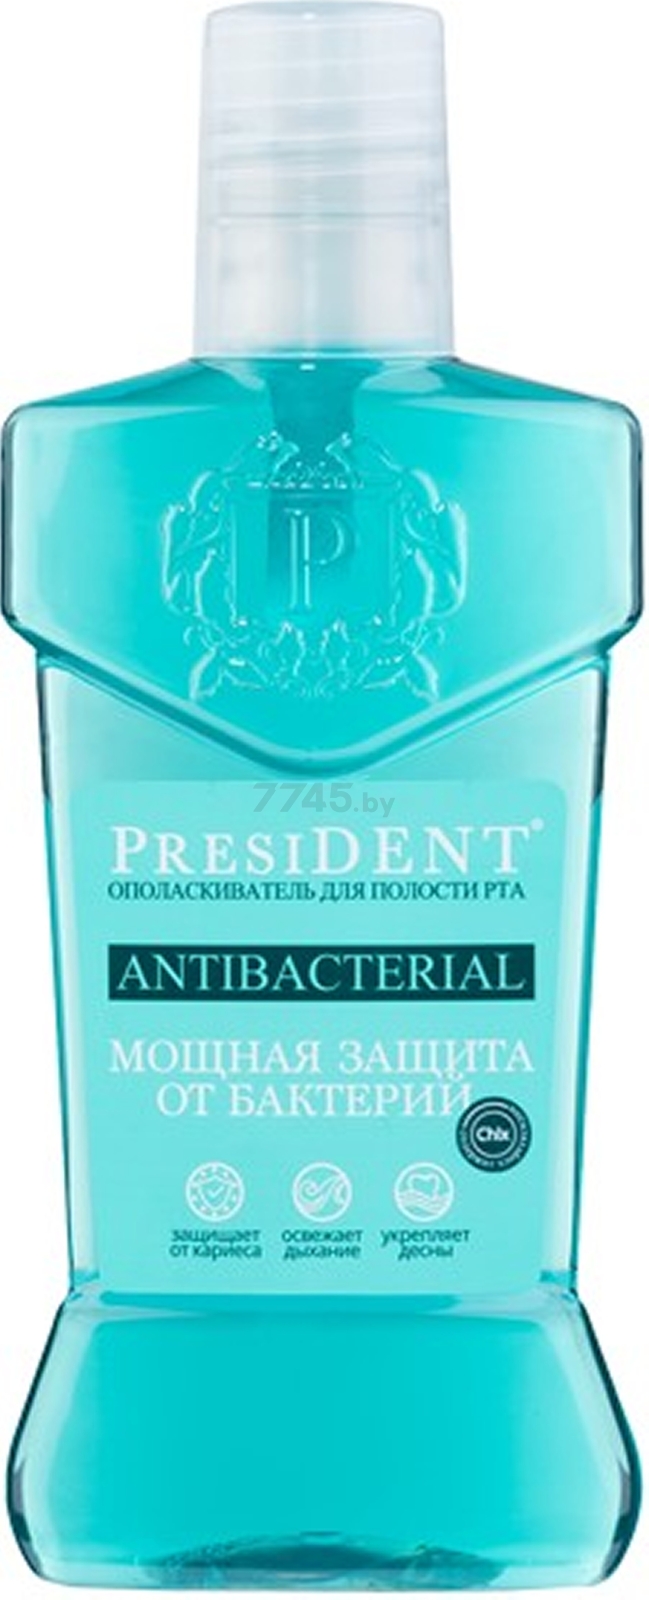 Ополаскиватель для полости рта PRESIDENT Antibacterial 250 мл (70017113)